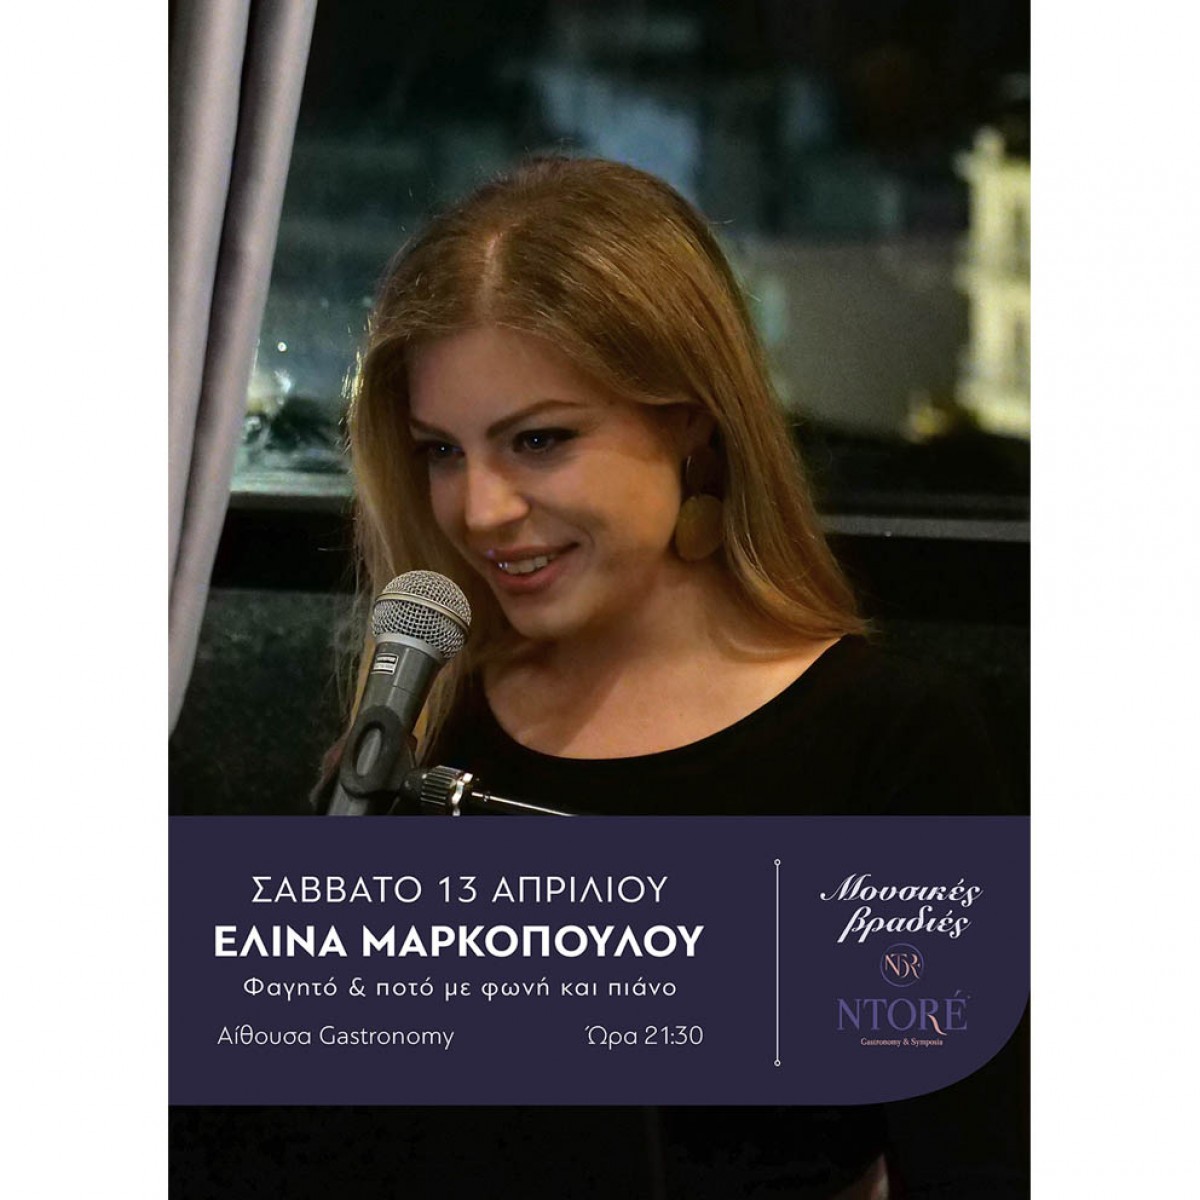 Φαγητό και ποτό με την Ελίνα Μαρκοπούλου στη φωνή και το πιάνο και την καλύτερη θέα της πόλης! Σάββατο 13 Απριλίου, 21:30